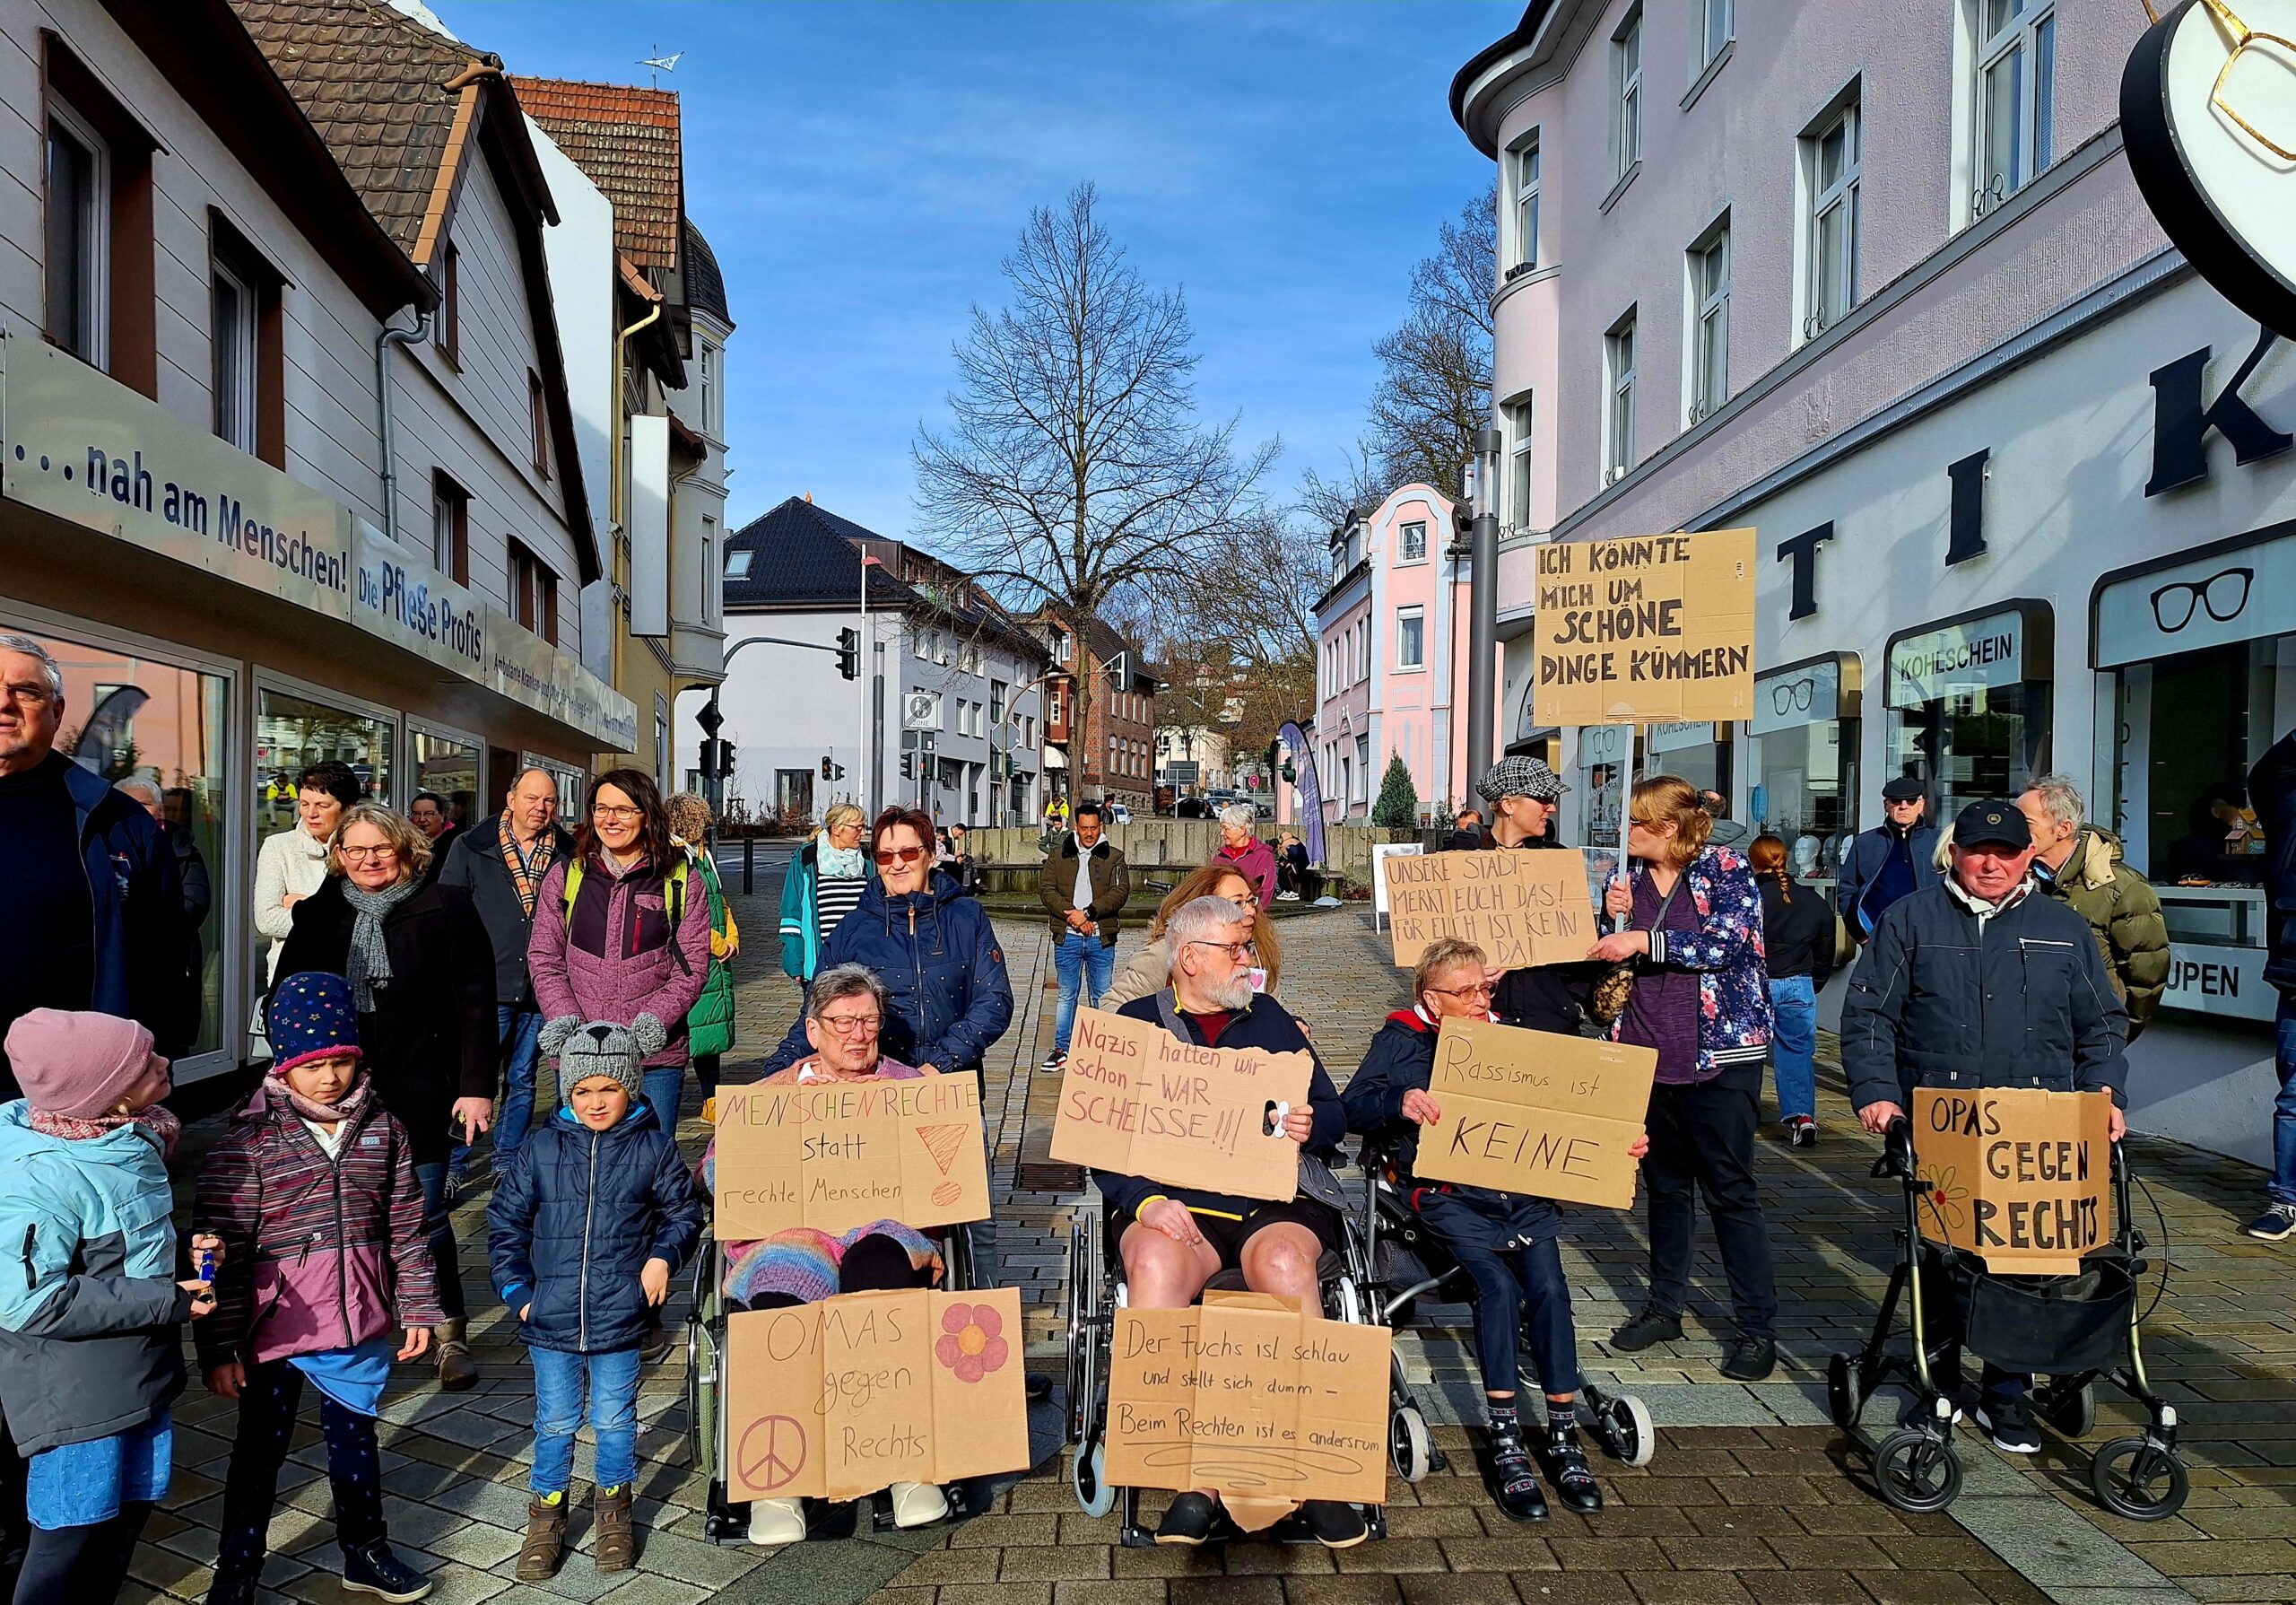 „Gerade nicht nur für politische Parteien“: Bündnis für Demokratie in Fröndenberg erklärt sich